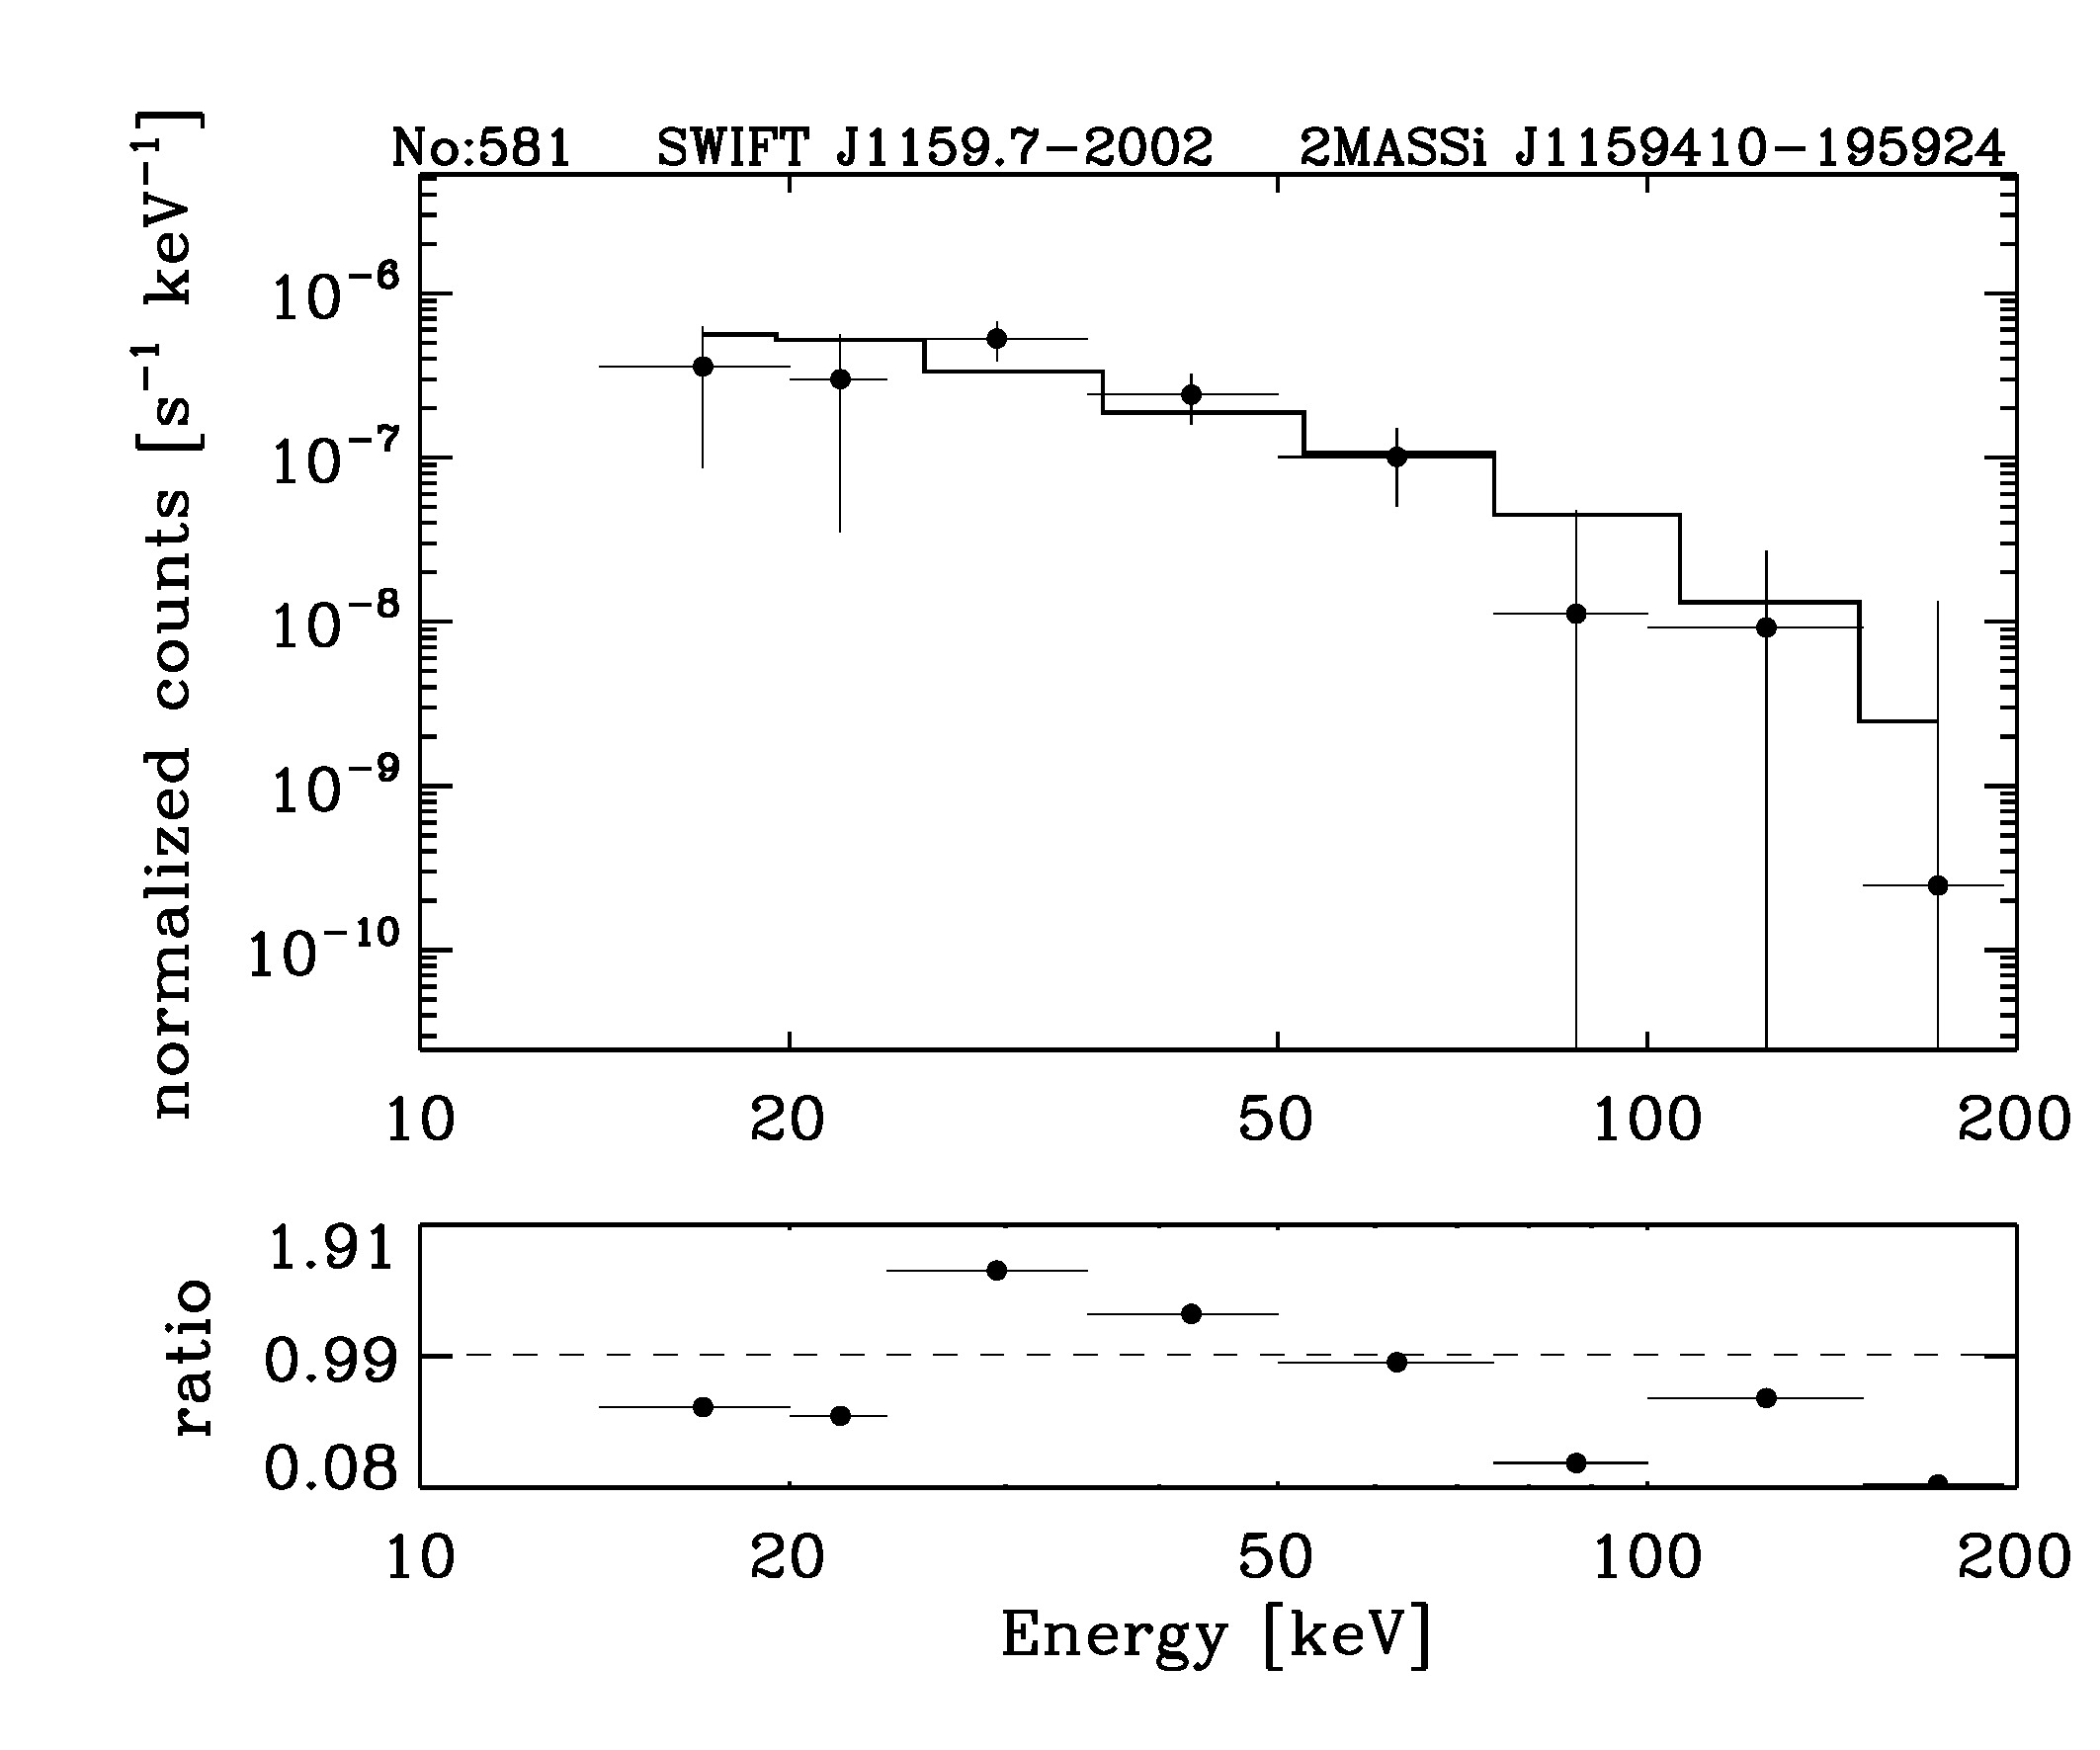 BAT Spectrum for SWIFT J1159.7-2002